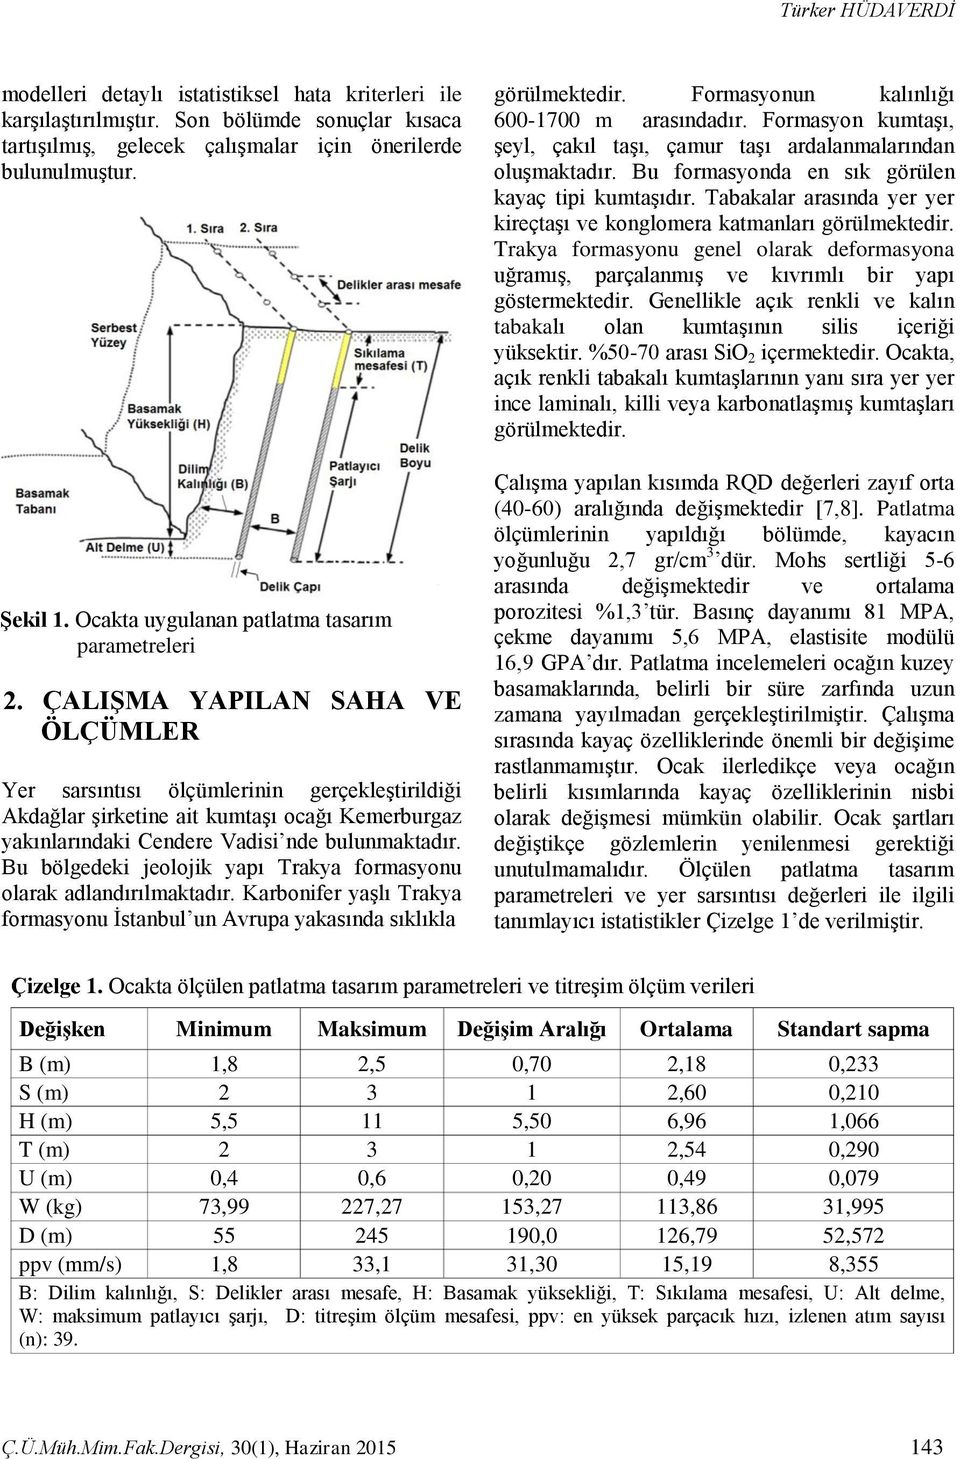 ÇALIġMA YAPILAN SAHA VE ÖLÇÜMLER Yer sarsıntısı ölçümlerinin gerçekleştirildiği Akdağlar şirketine ait kumtaşı ocağı Kemerburgaz yakınlarındaki Cendere Vadisi nde bulunmaktadır.